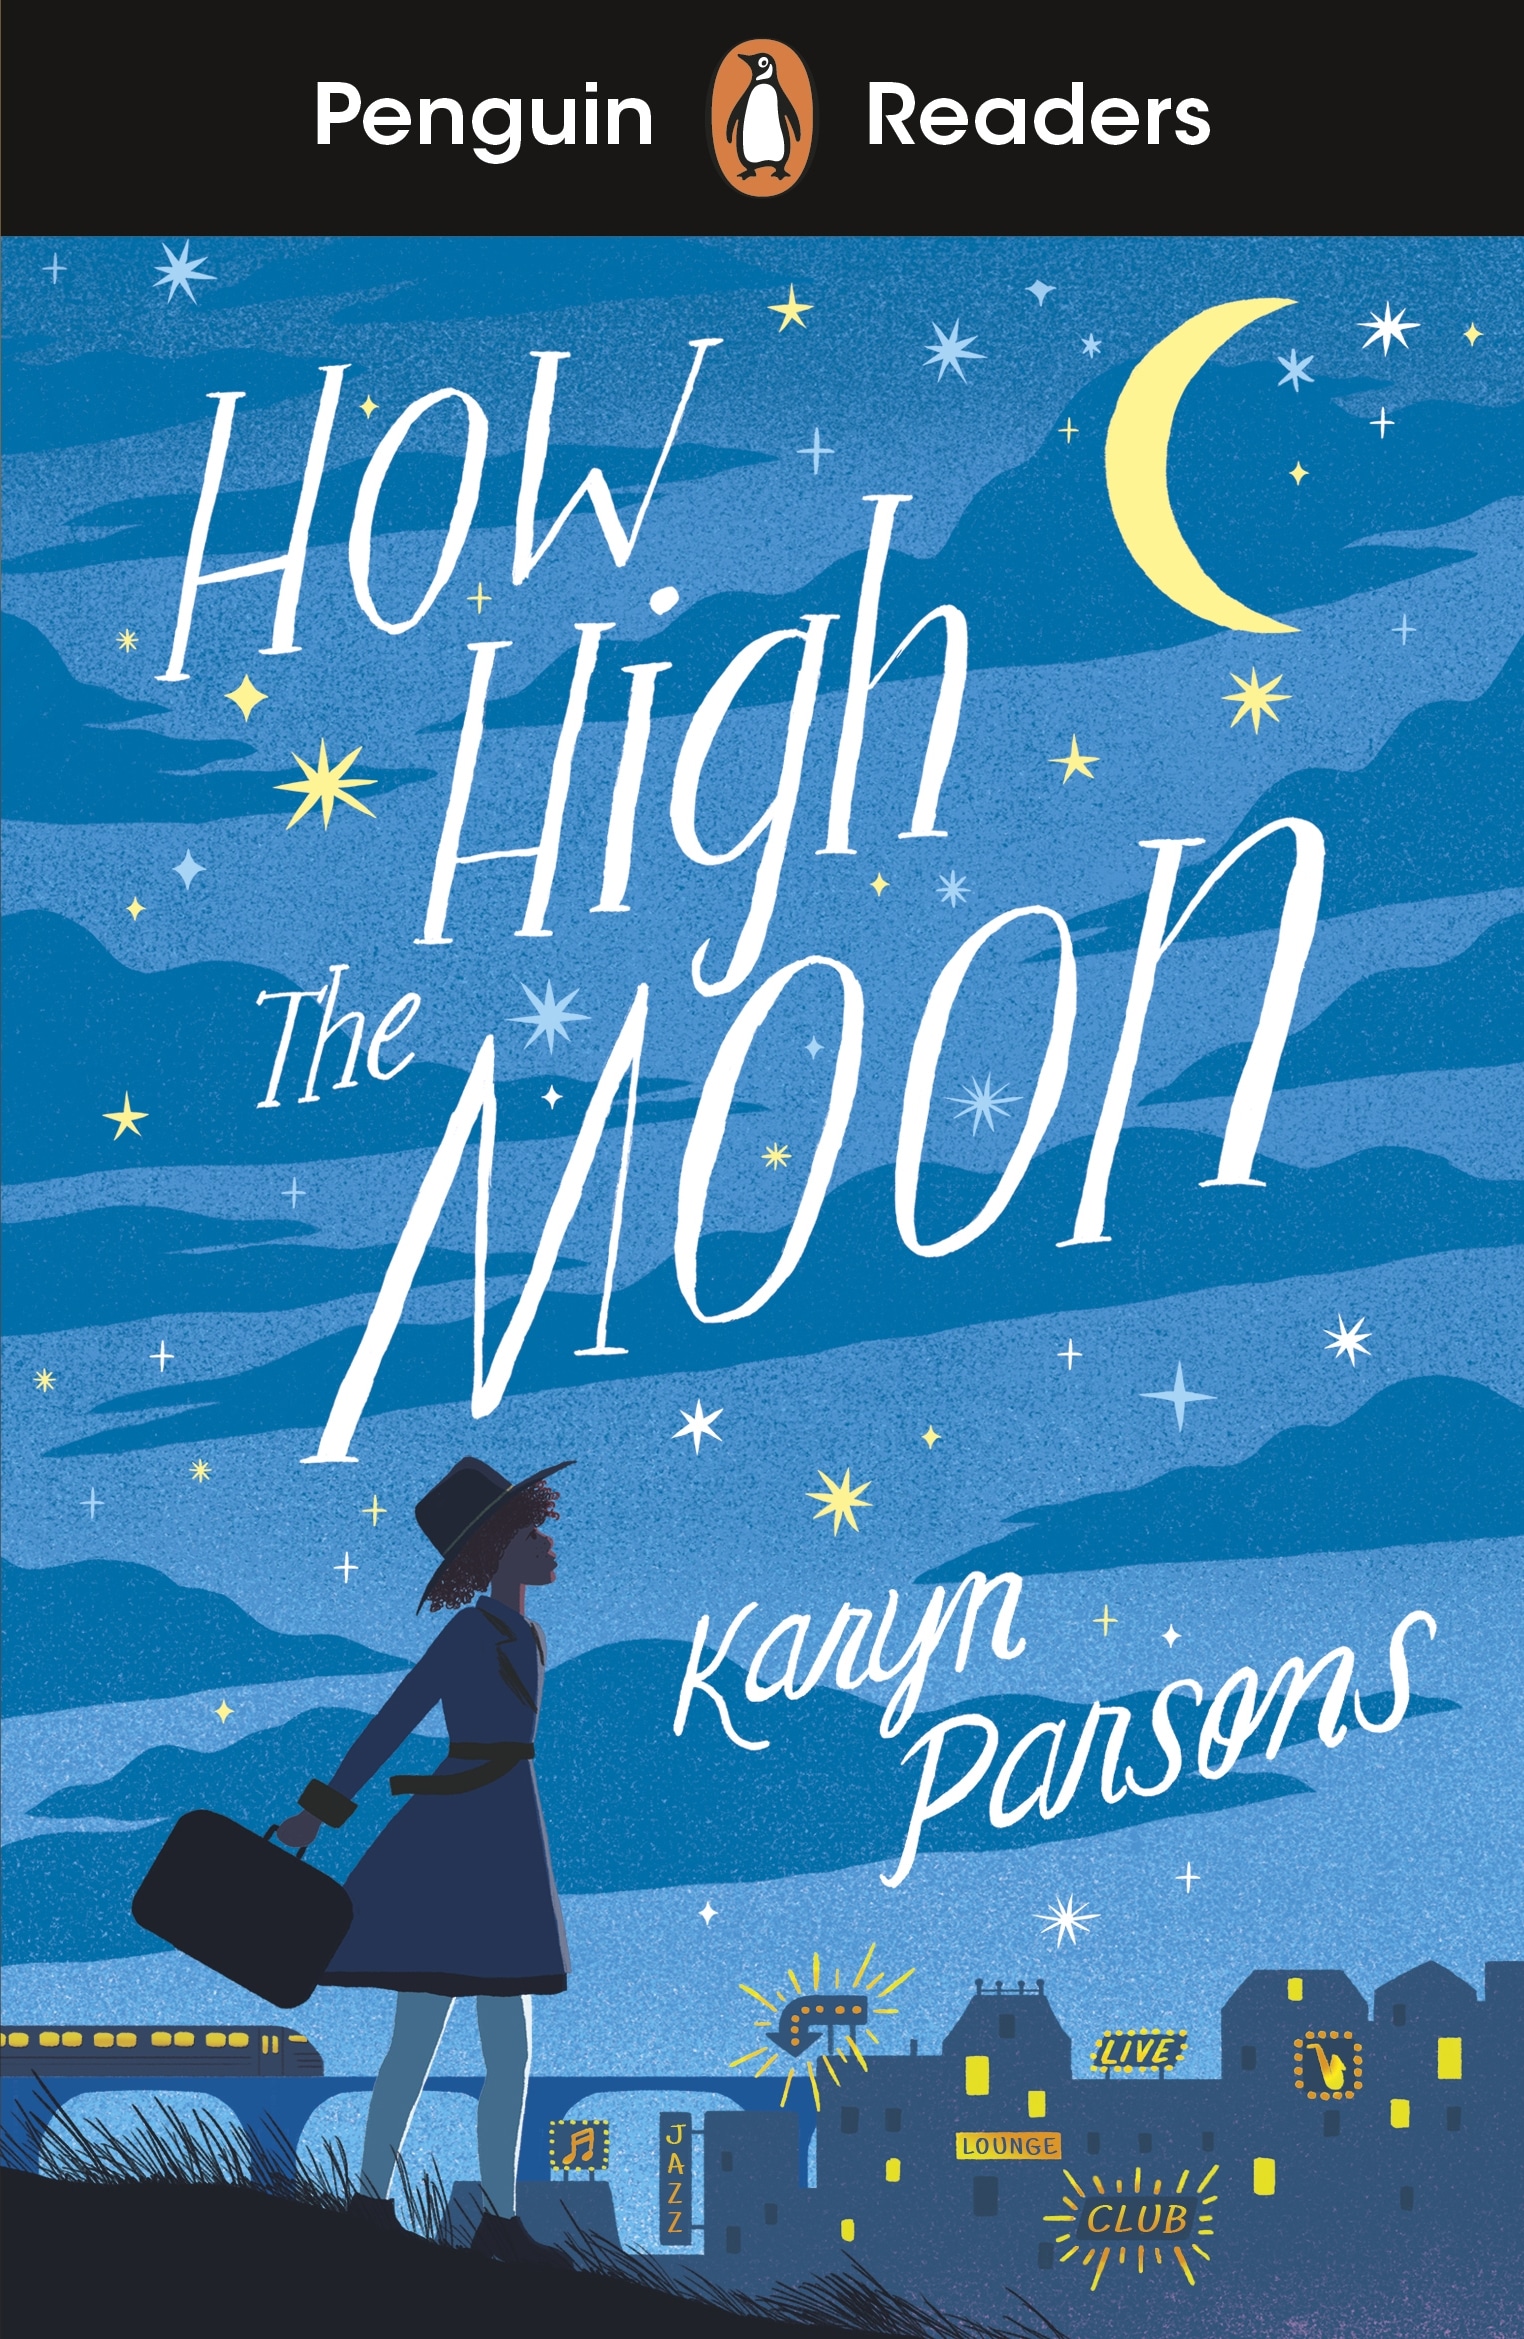 Book “Penguin Readers Level 4: How High The Moon (ELT Graded Reader)” by Karyn Parsons — September 30, 2021